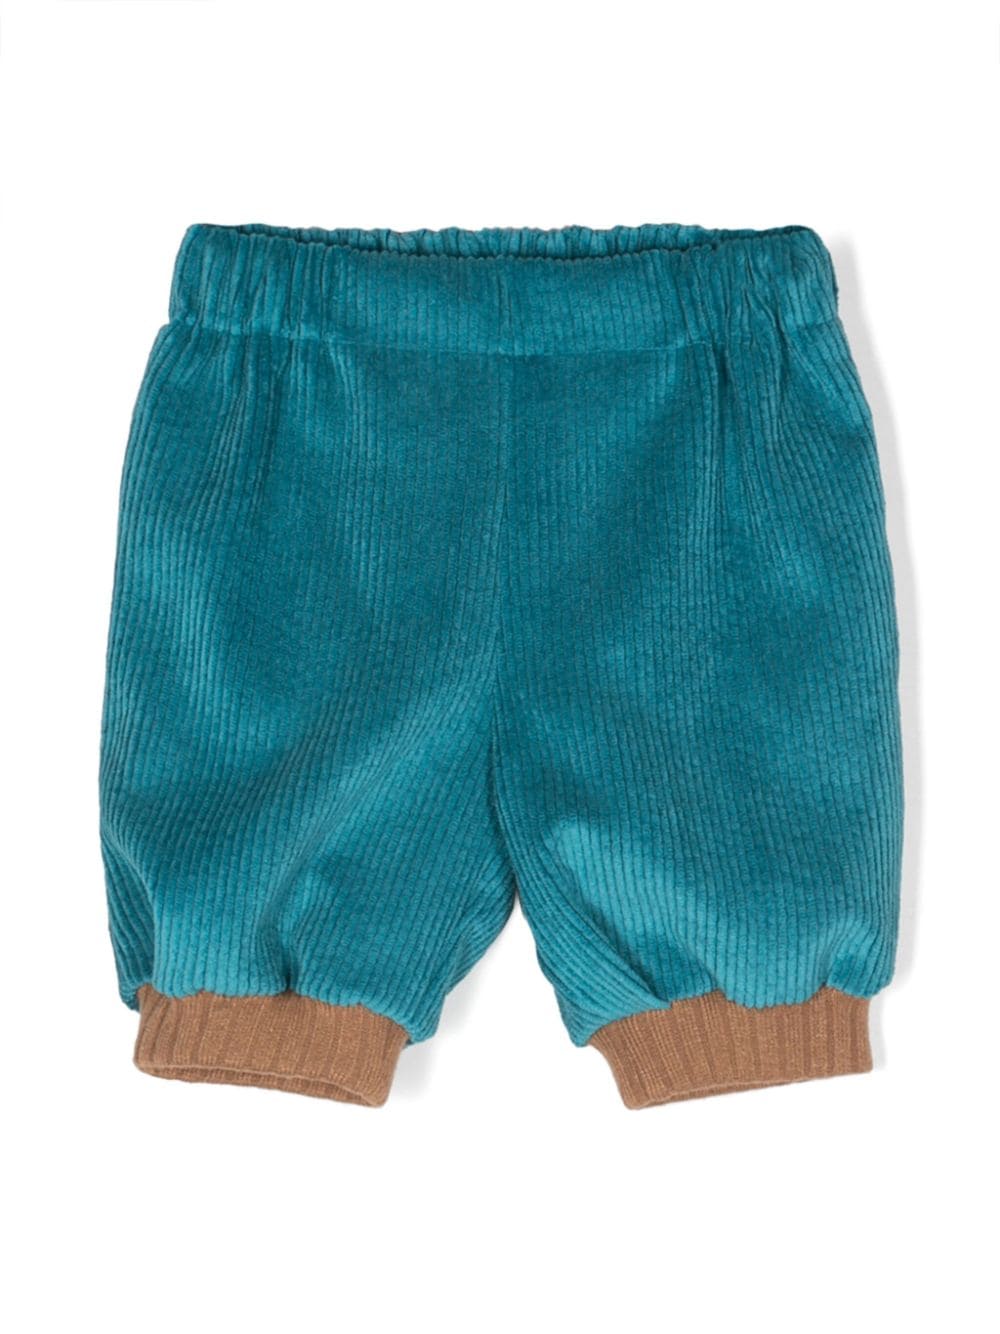 pantaloni in velluto a coste con vita elasticizzata - Rubino Kids